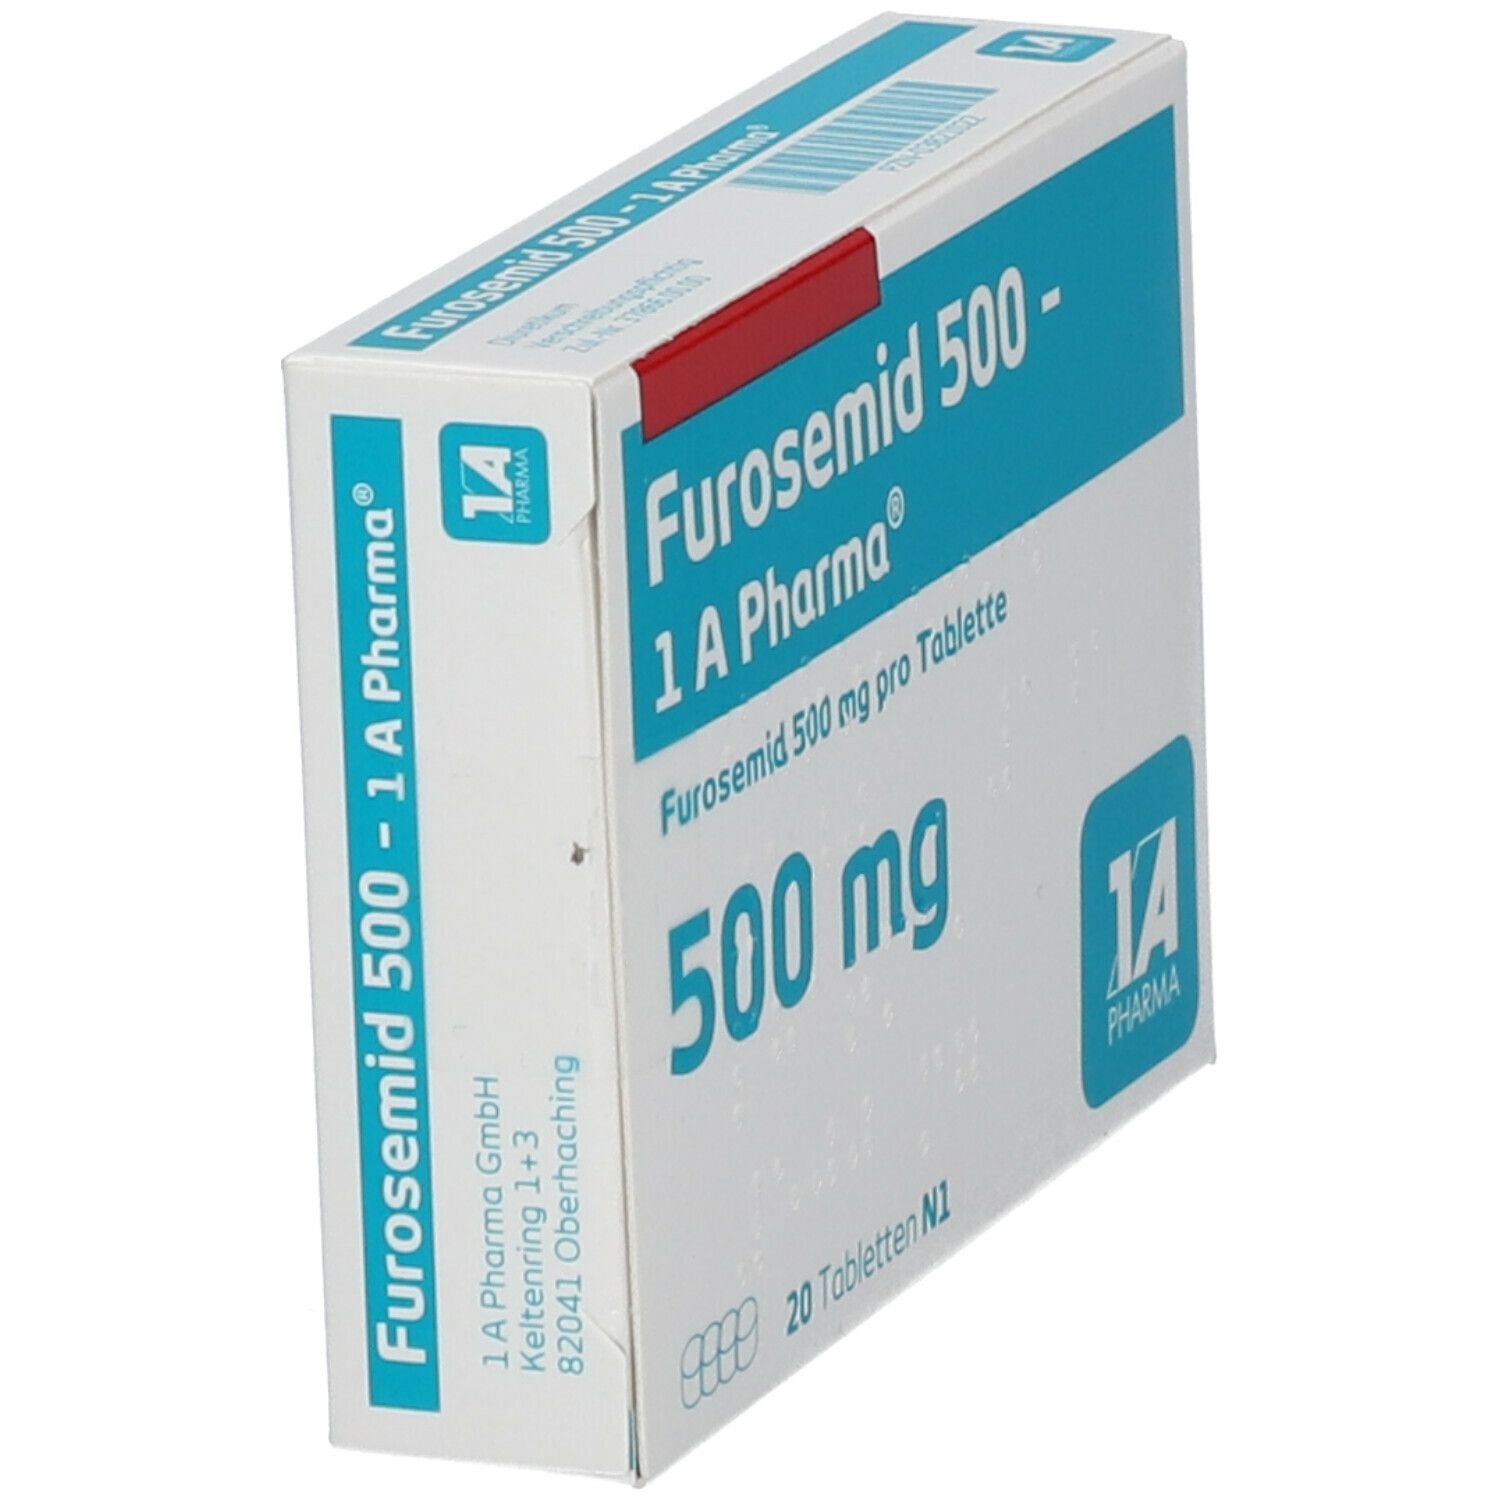 Furosemid 500 - 1 A Pharma®